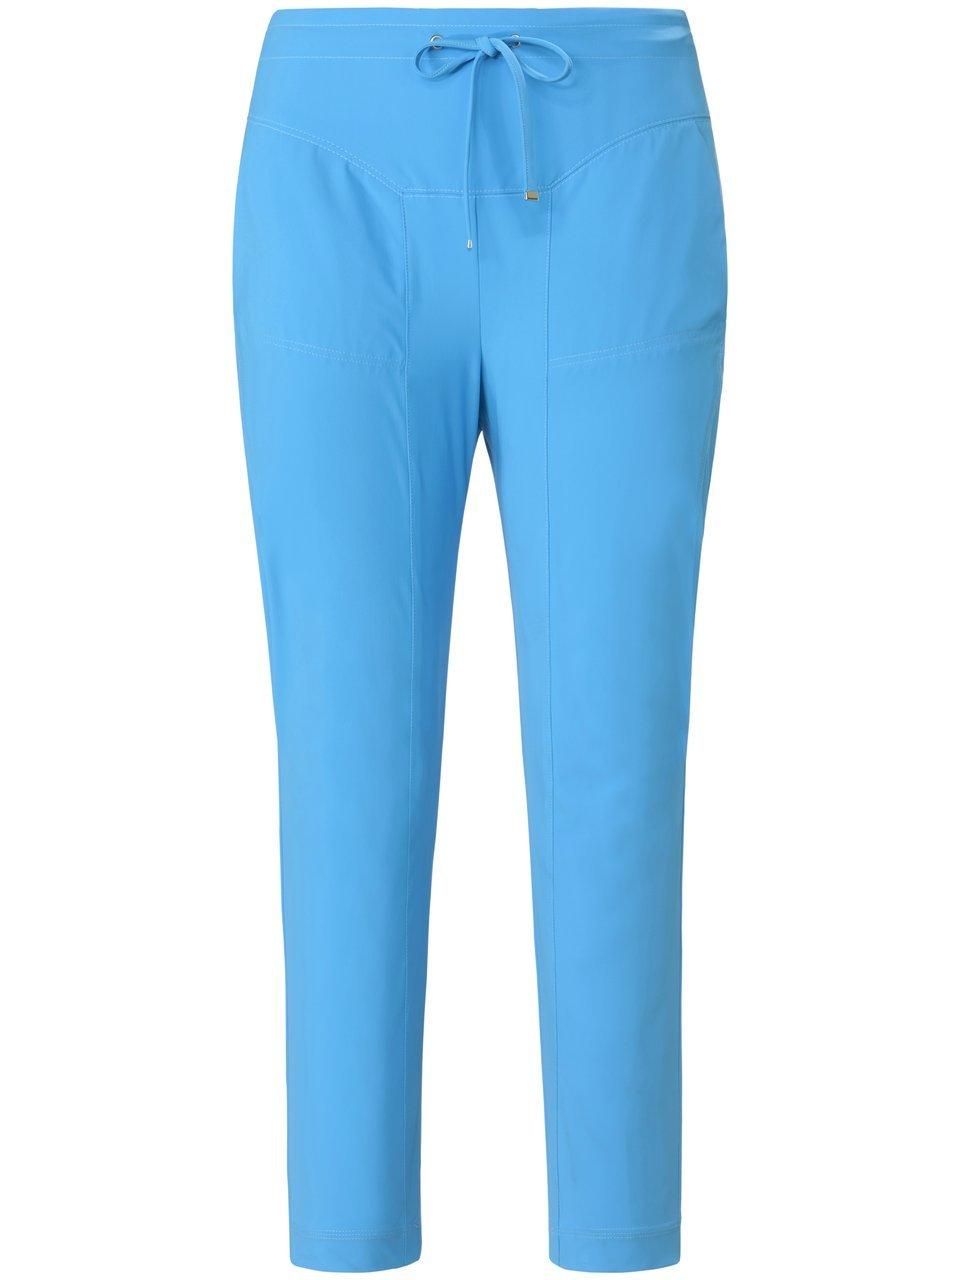 Broek in jogg-pant-stijl model Gira Van Raffaello Rossi blauw